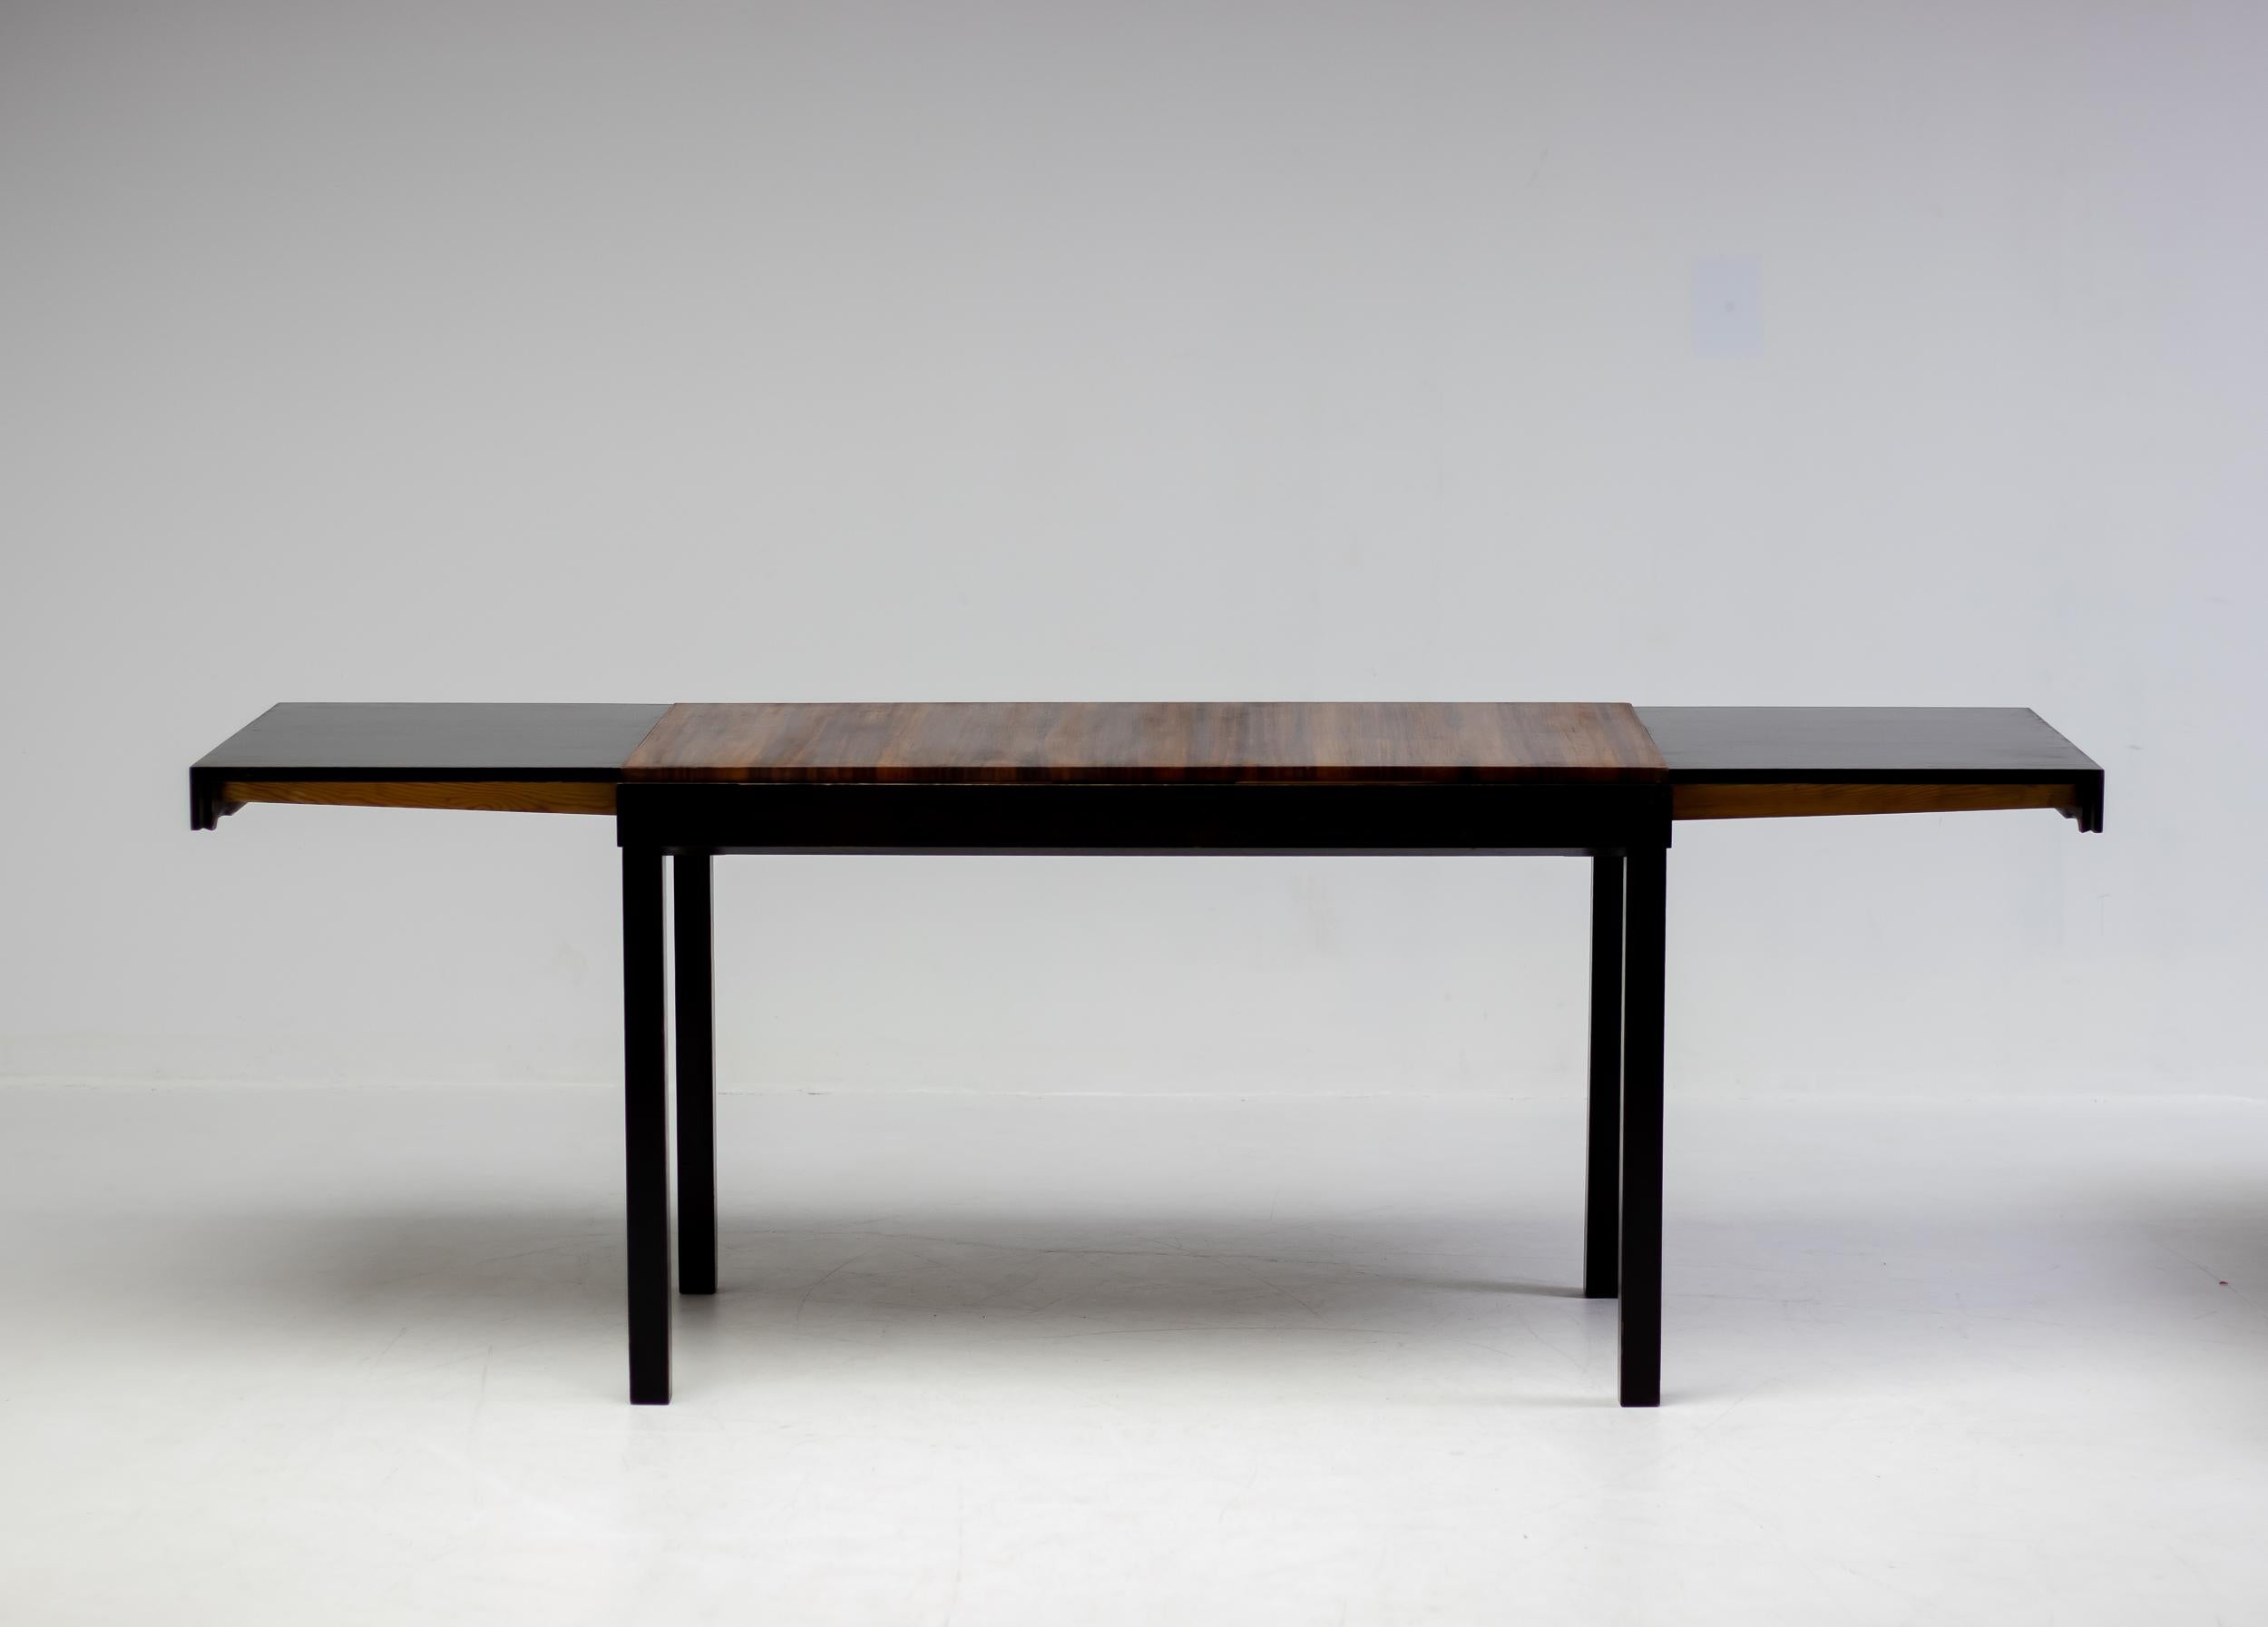 Birch Axel Einar Hjorth Extendable Table, Macassar, 1930 For Sale